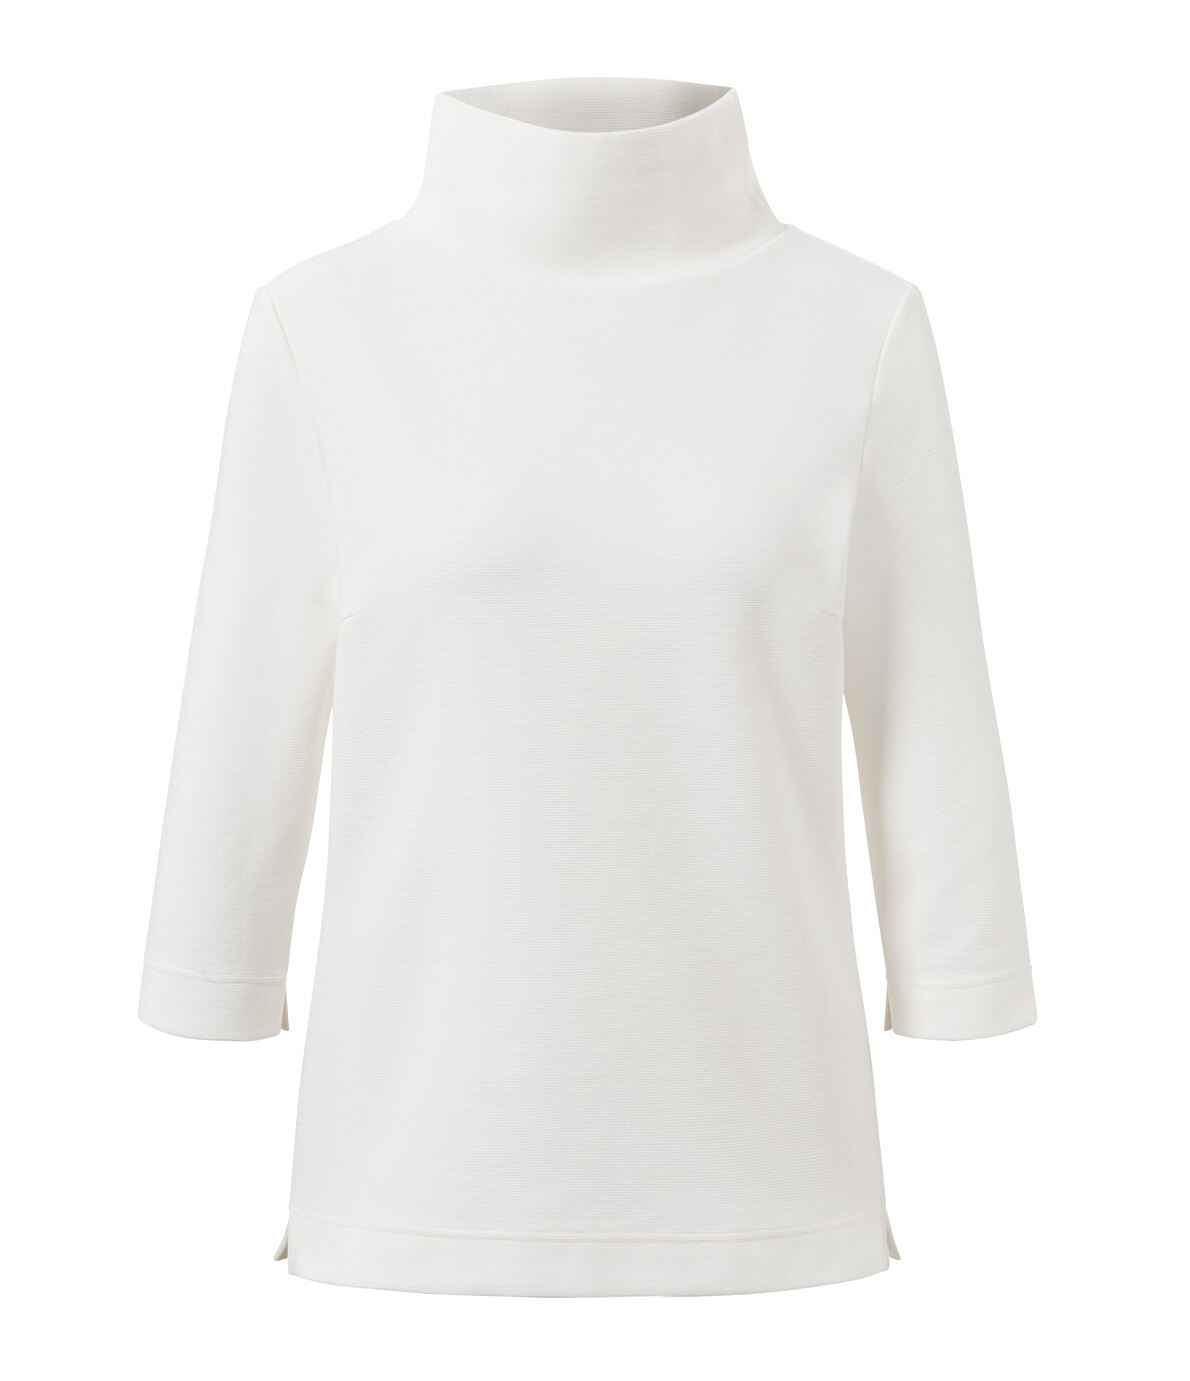 133396 Sweatshirt mit 3-4-Arm, Weiß FS 1 47.23